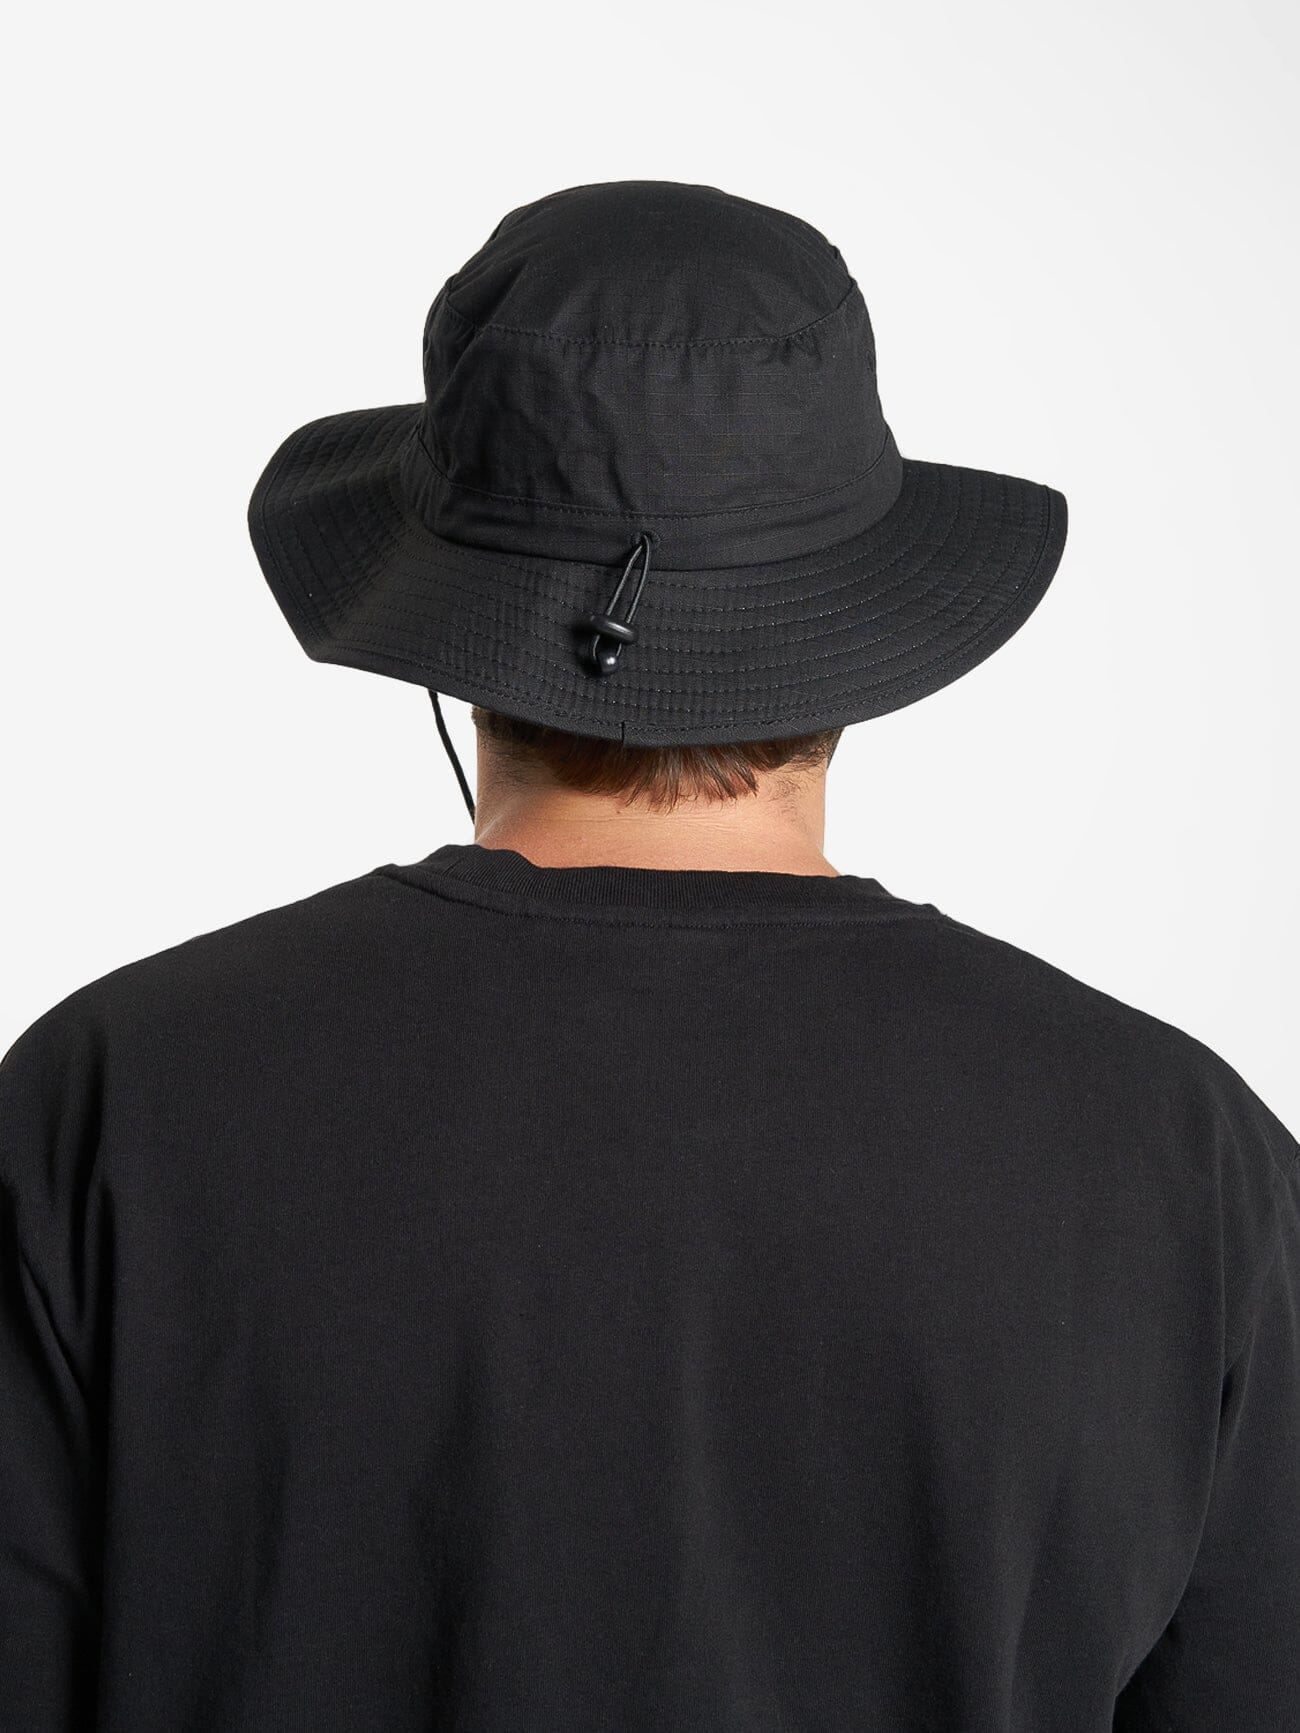 Unlock Your Mind Boonie Hat - Black